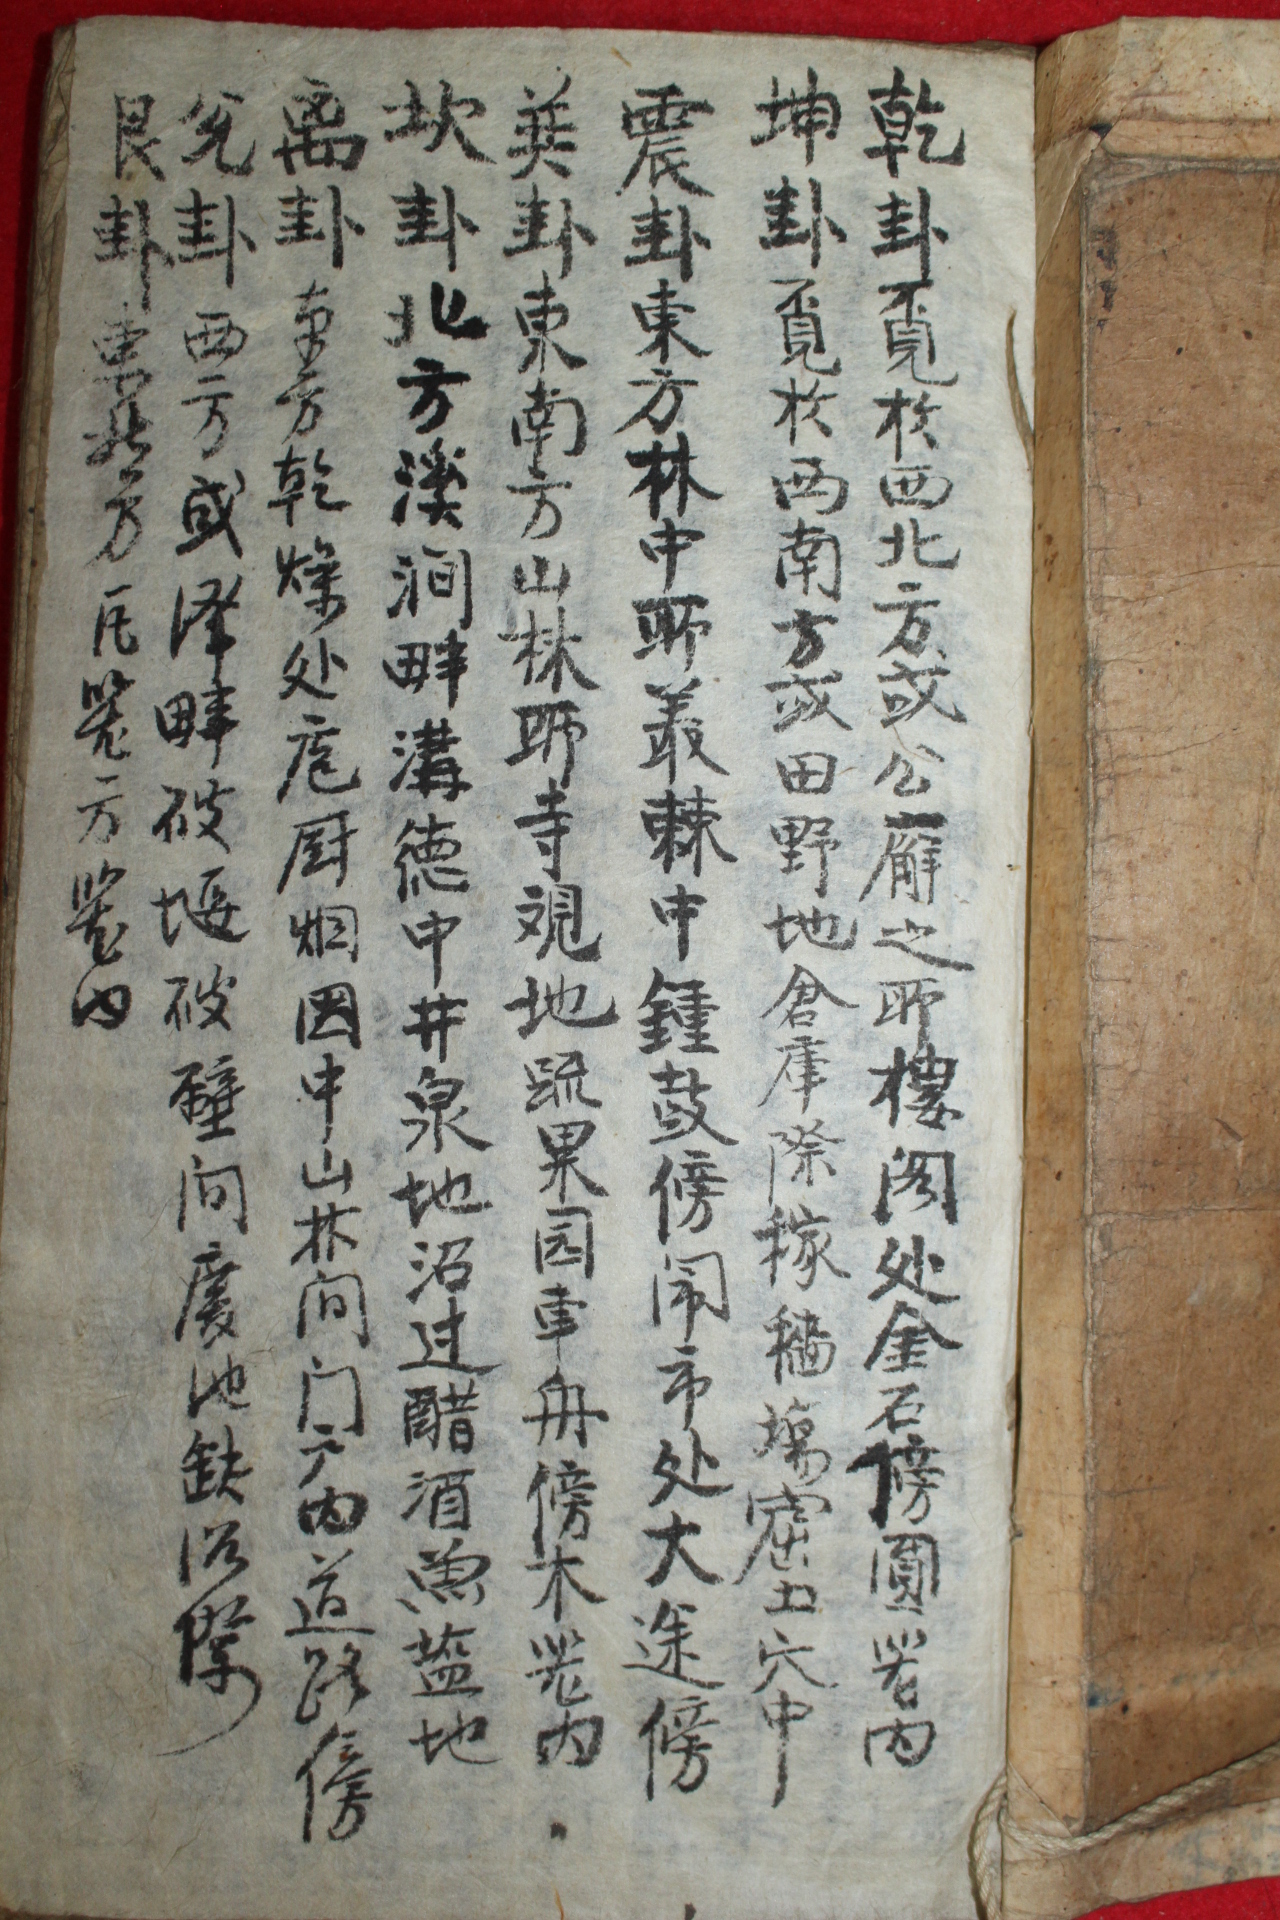 조선시대 필사본 의서 질병장(疾病章)